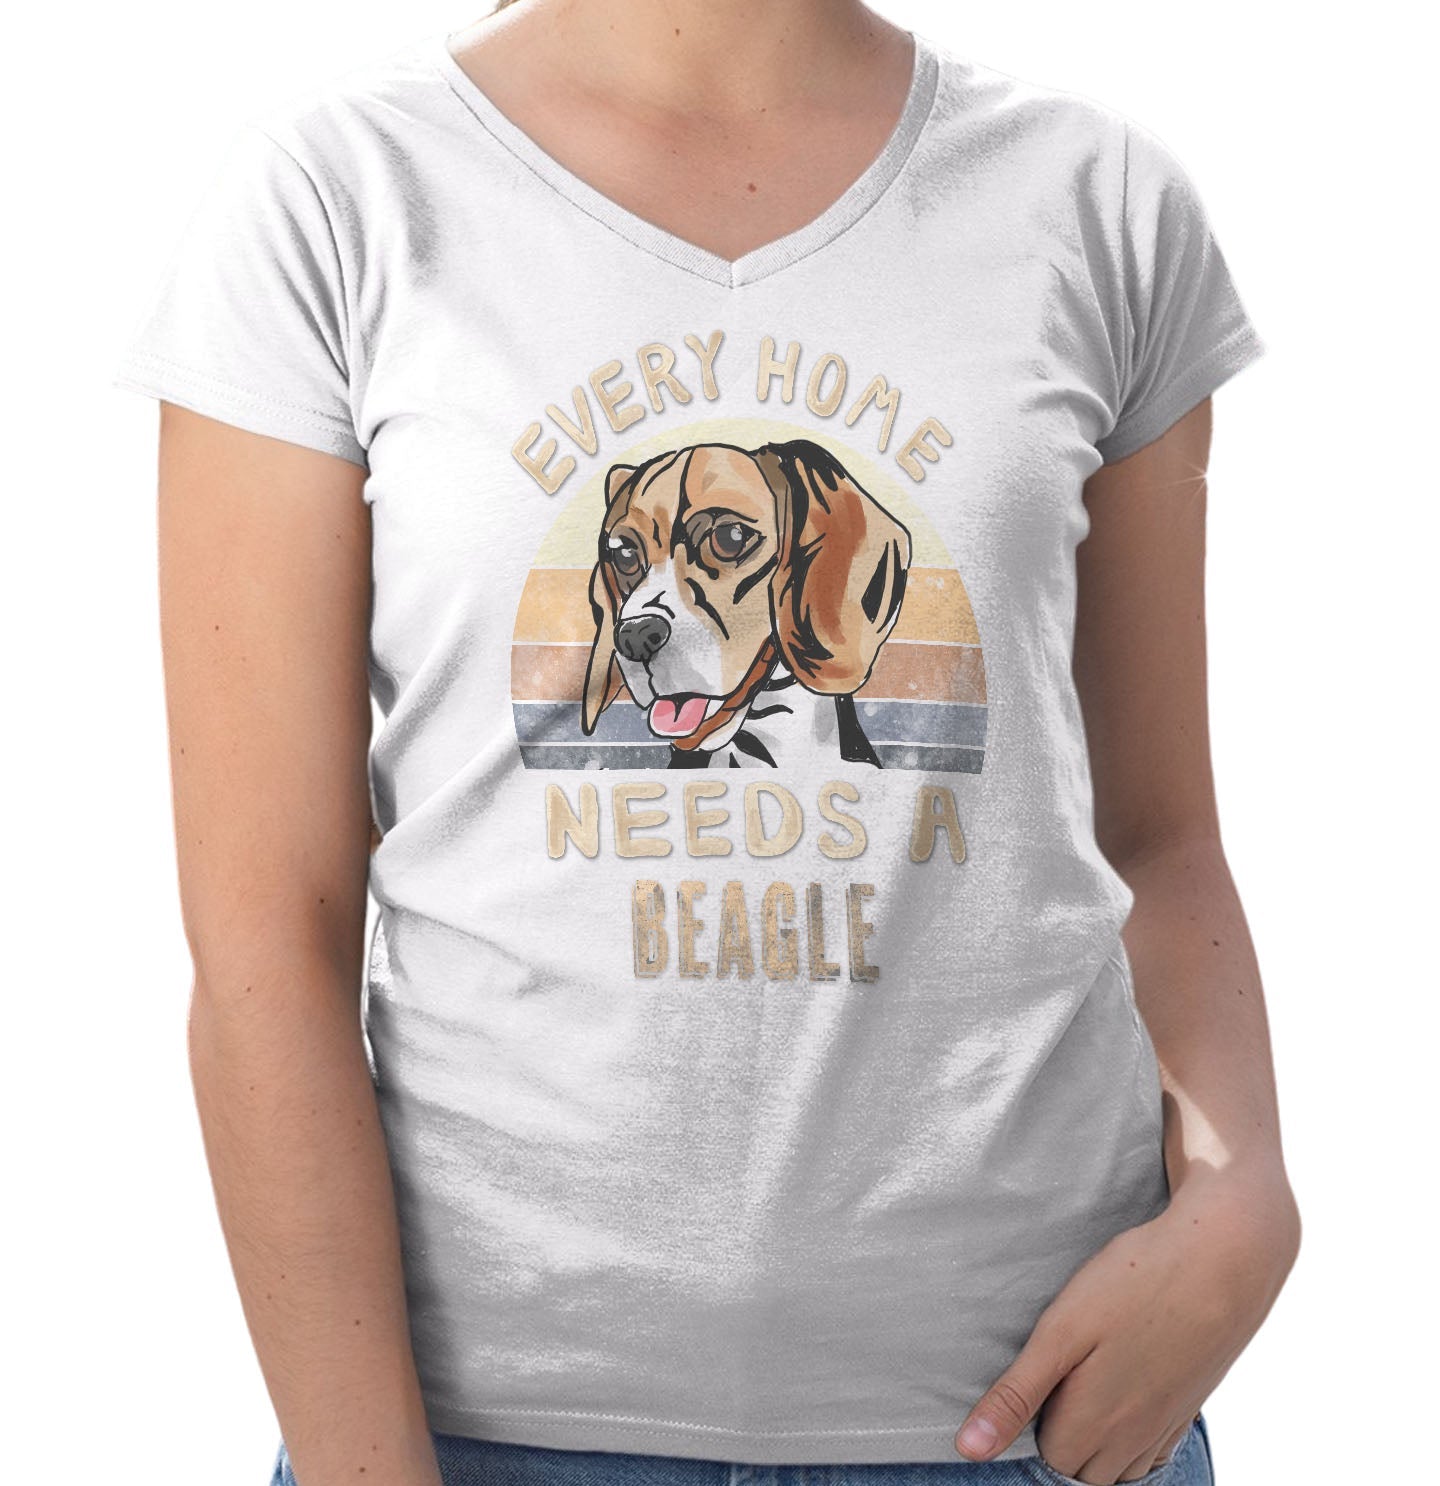 Every Home Needs a Beagle - Women's V-Neck T-Shirt